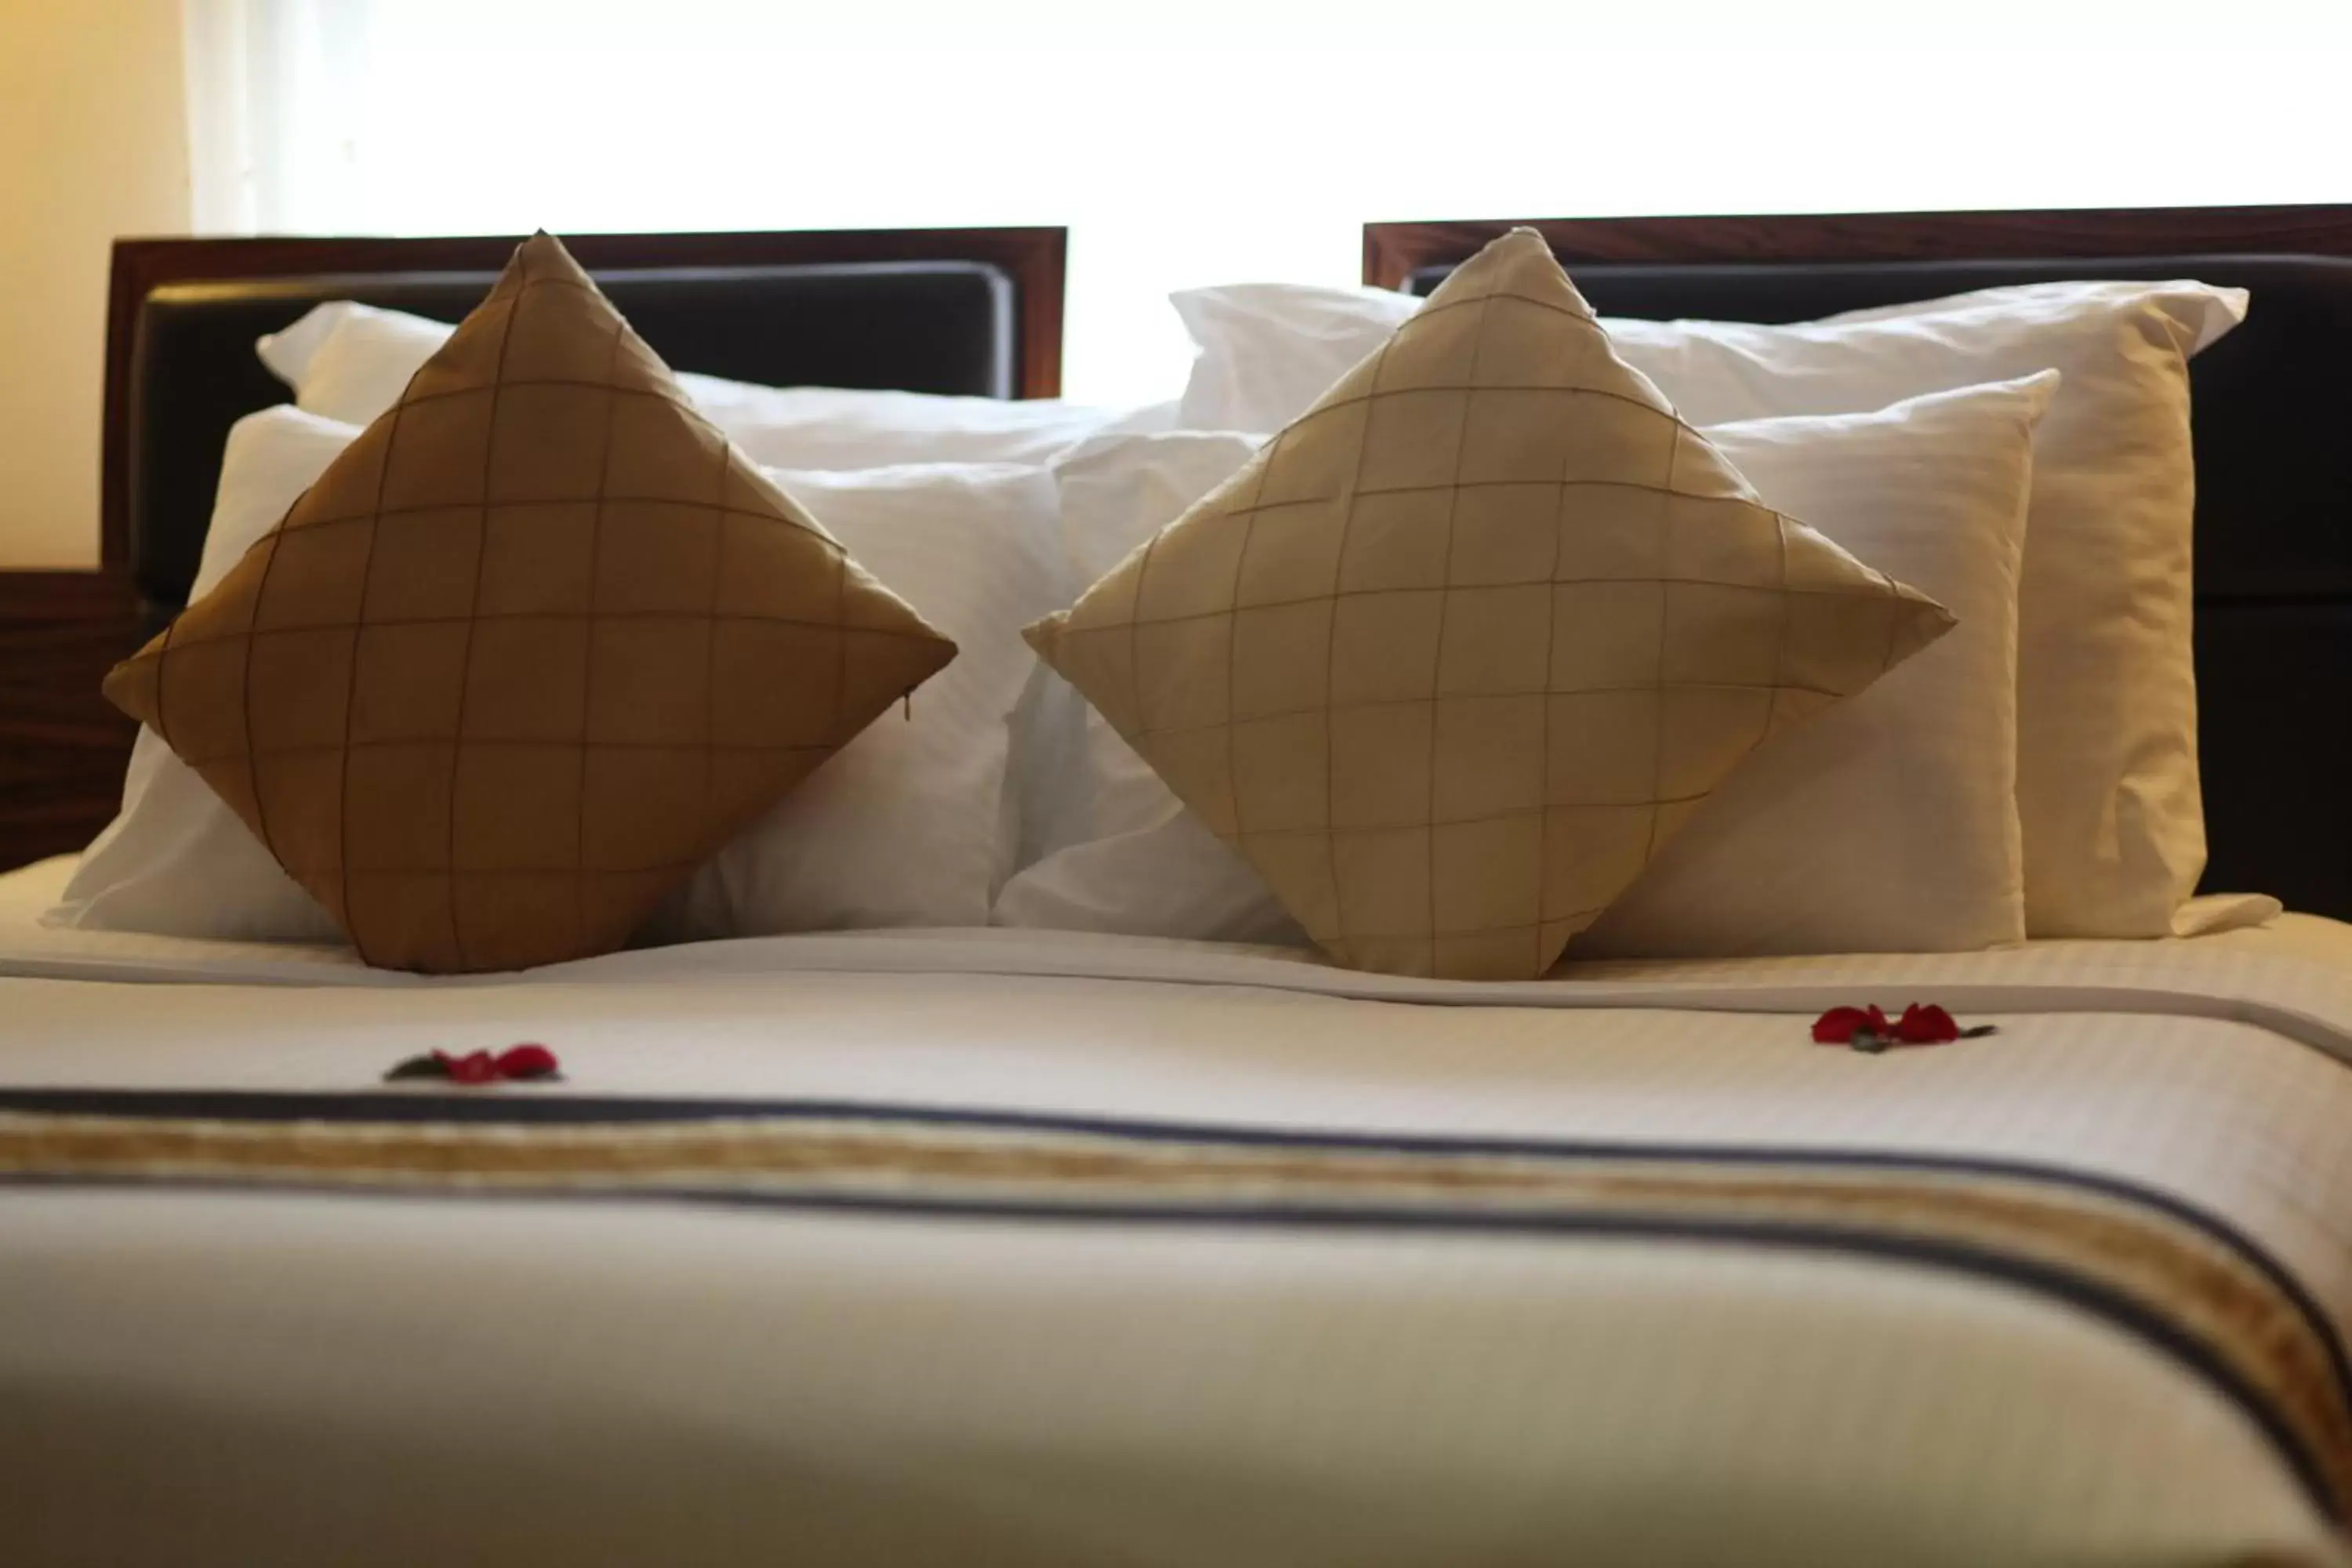 Bed in Elite Central Hotel Hanoi